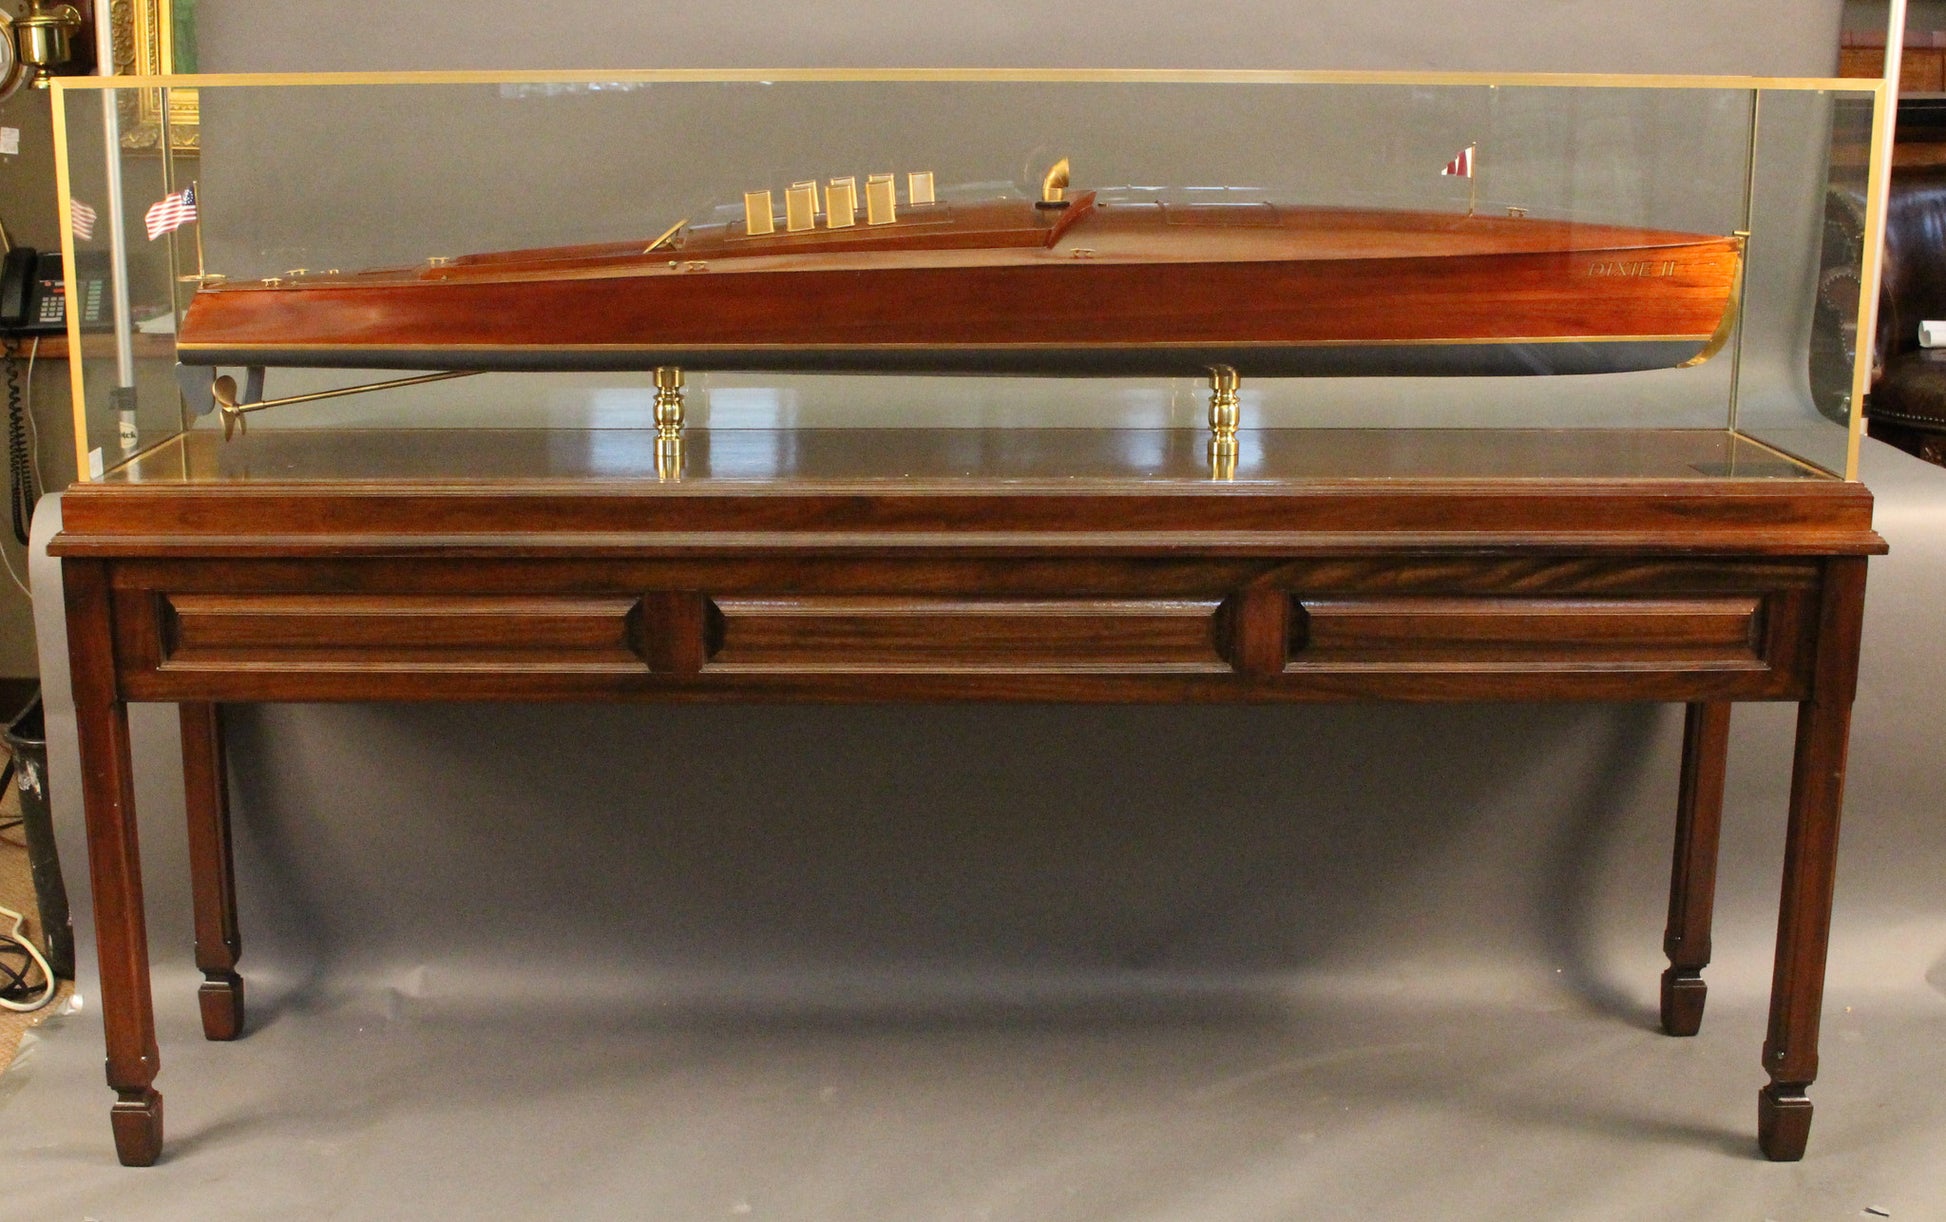 Speedboat "Dixie" II, 6-feet long - Lannan Gallery